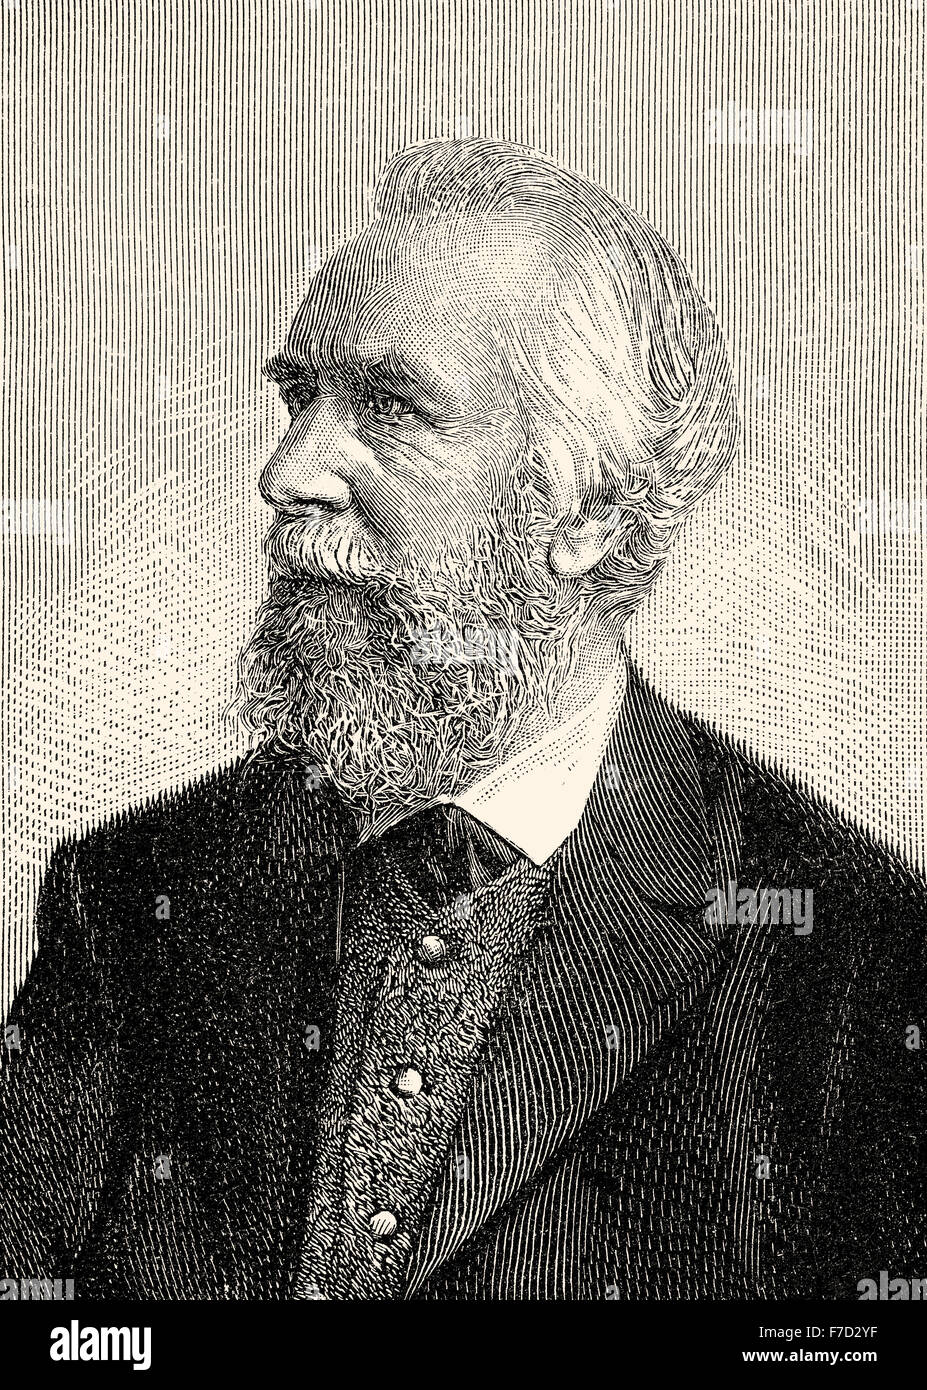 Philipp Heinrich Ernst Haeckel Agosto,1834-1919, un biólogo naturalista alemán, filósofo, médico, profesor y artista, Foto de stock